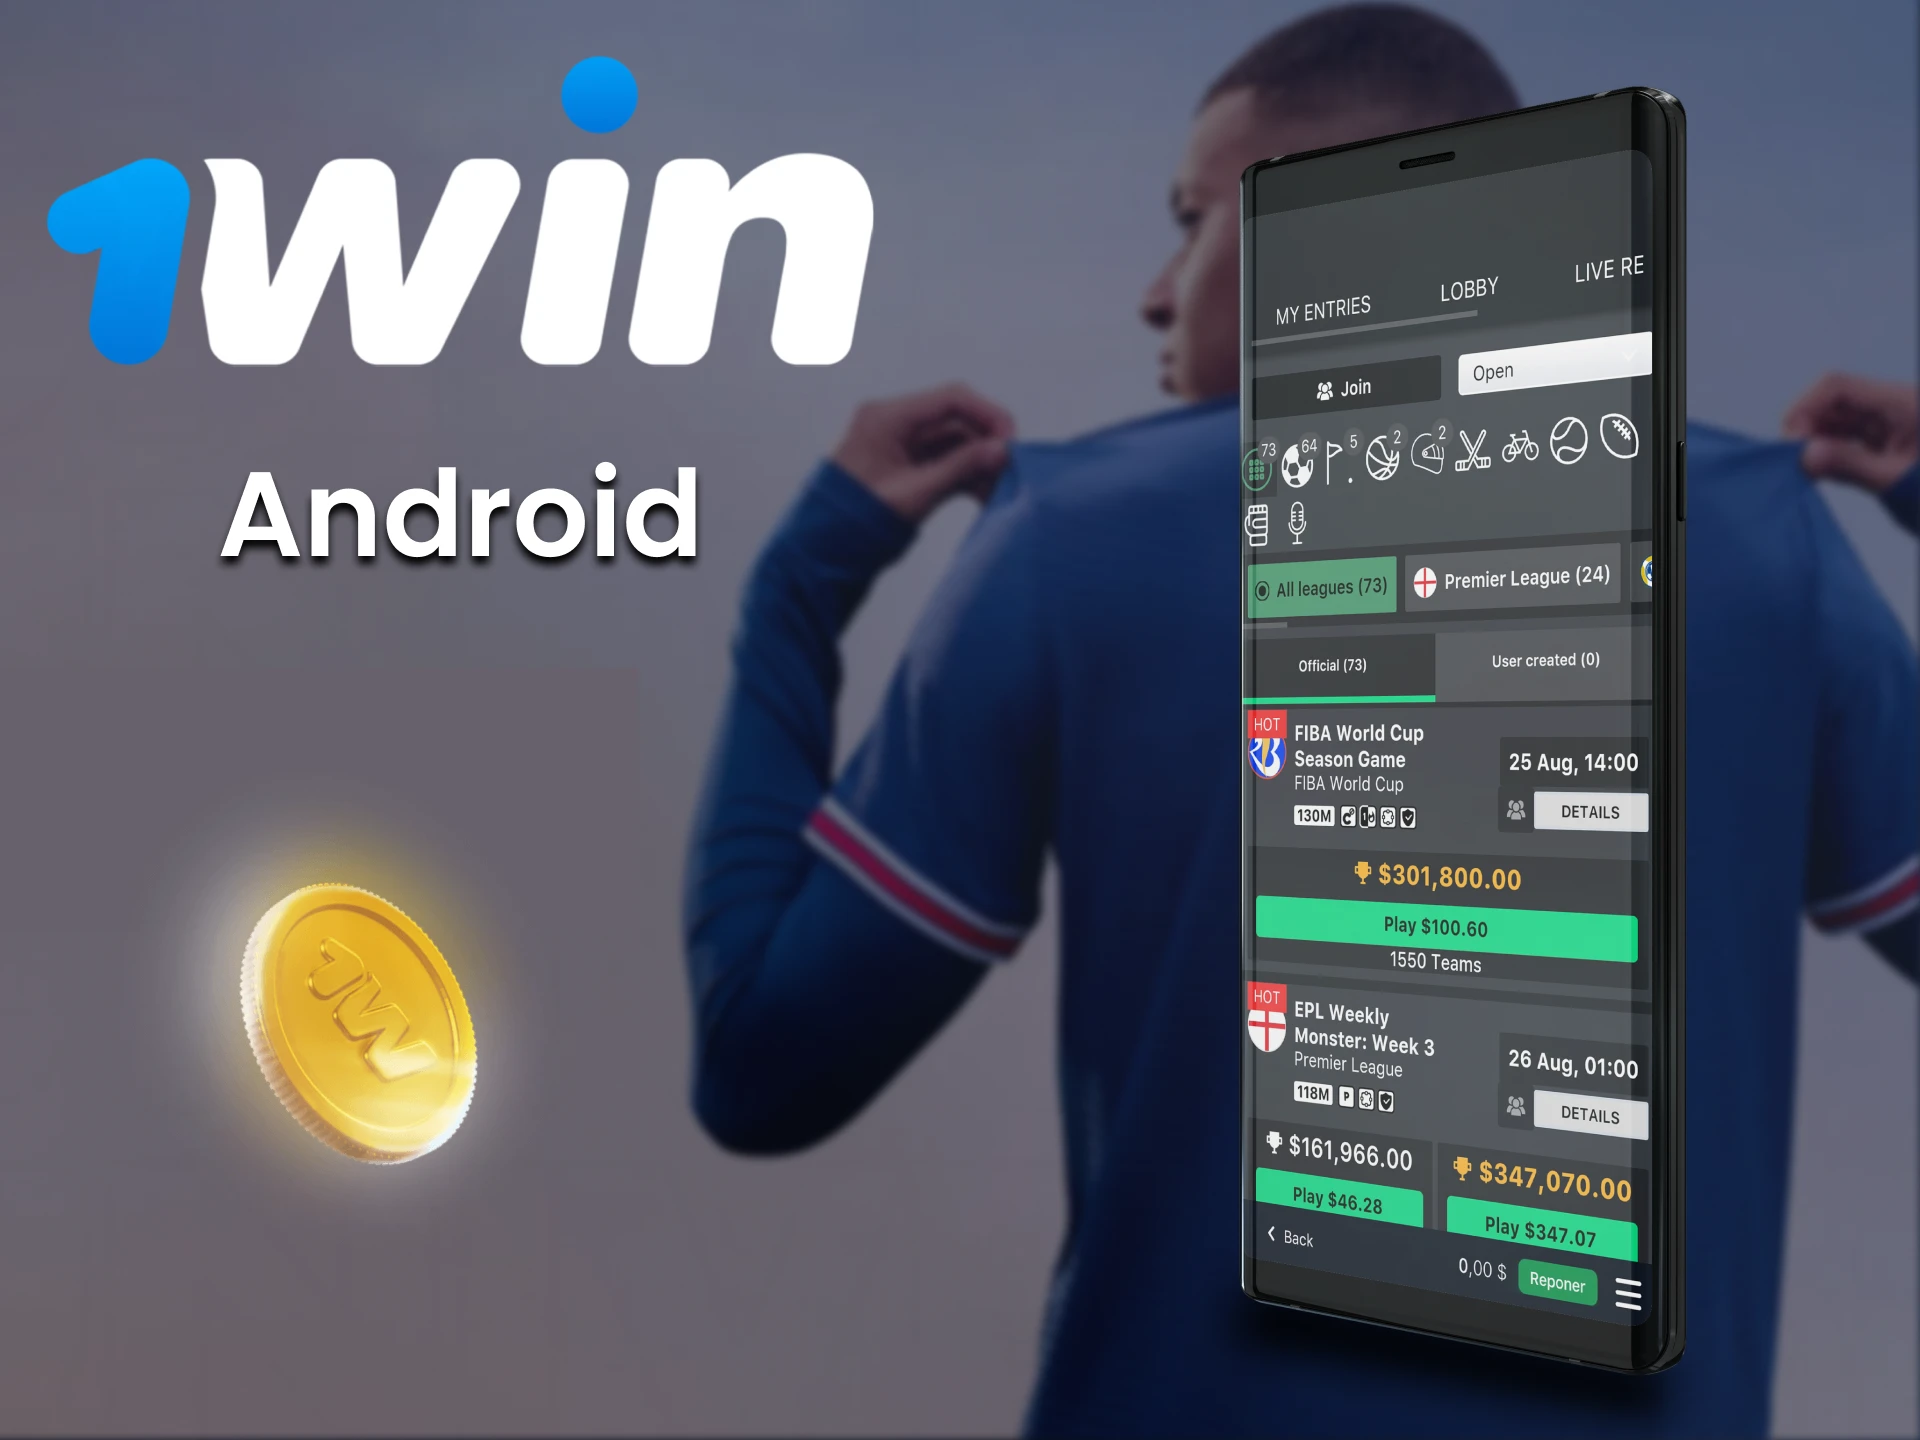 Realice apuestas a través de la aplicación 1win para Android en deportes de fantasía.